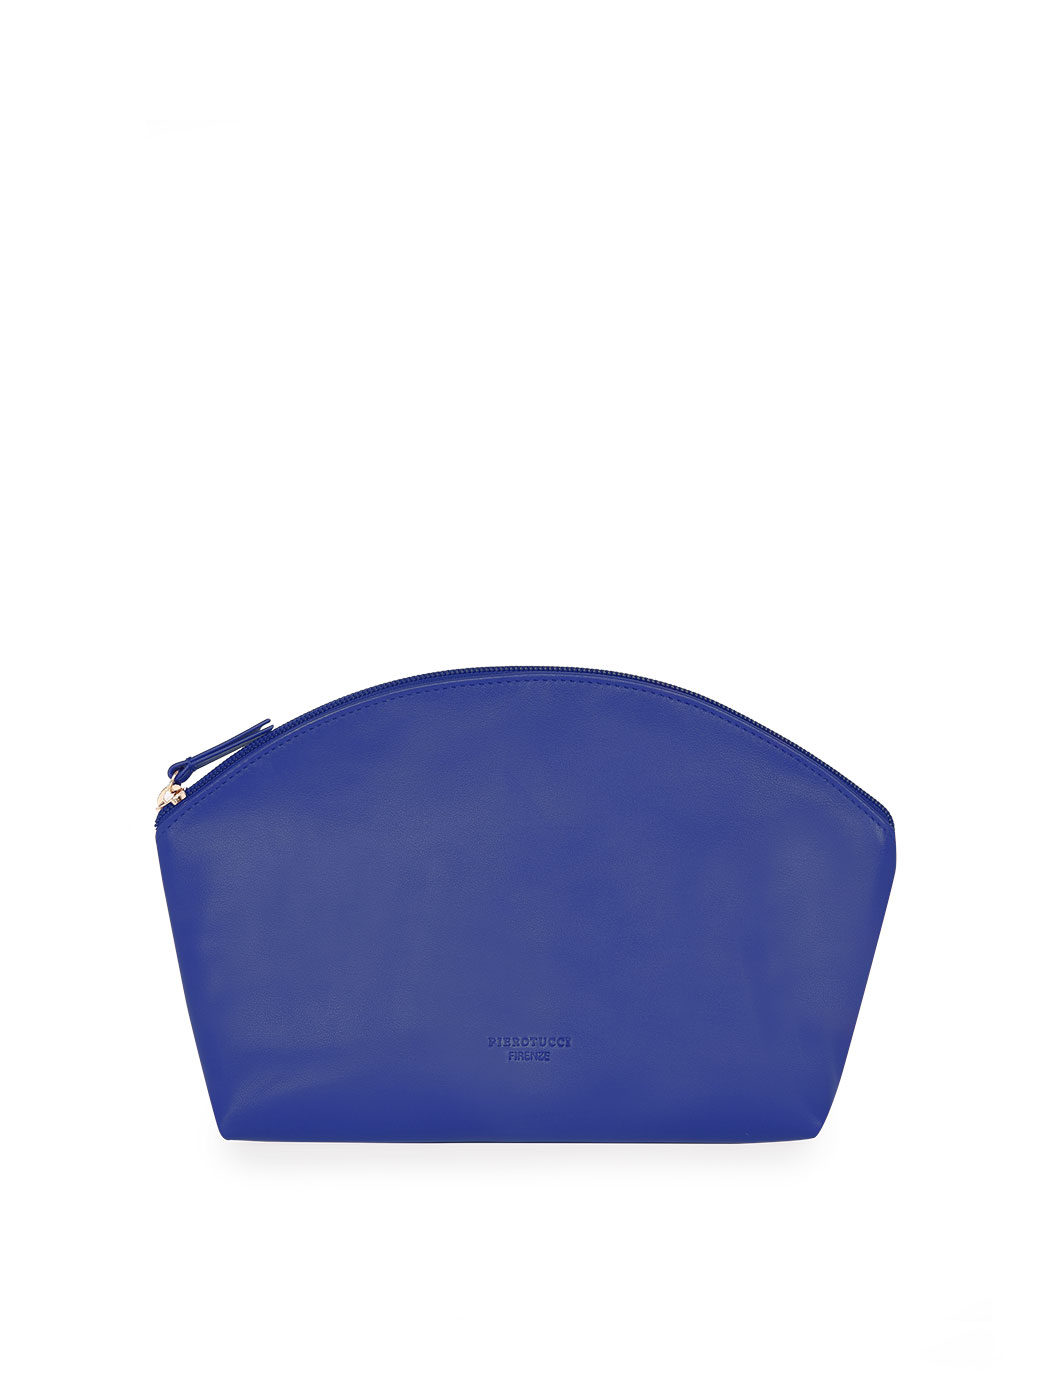 Кожаный клатч на ремне синего цвета